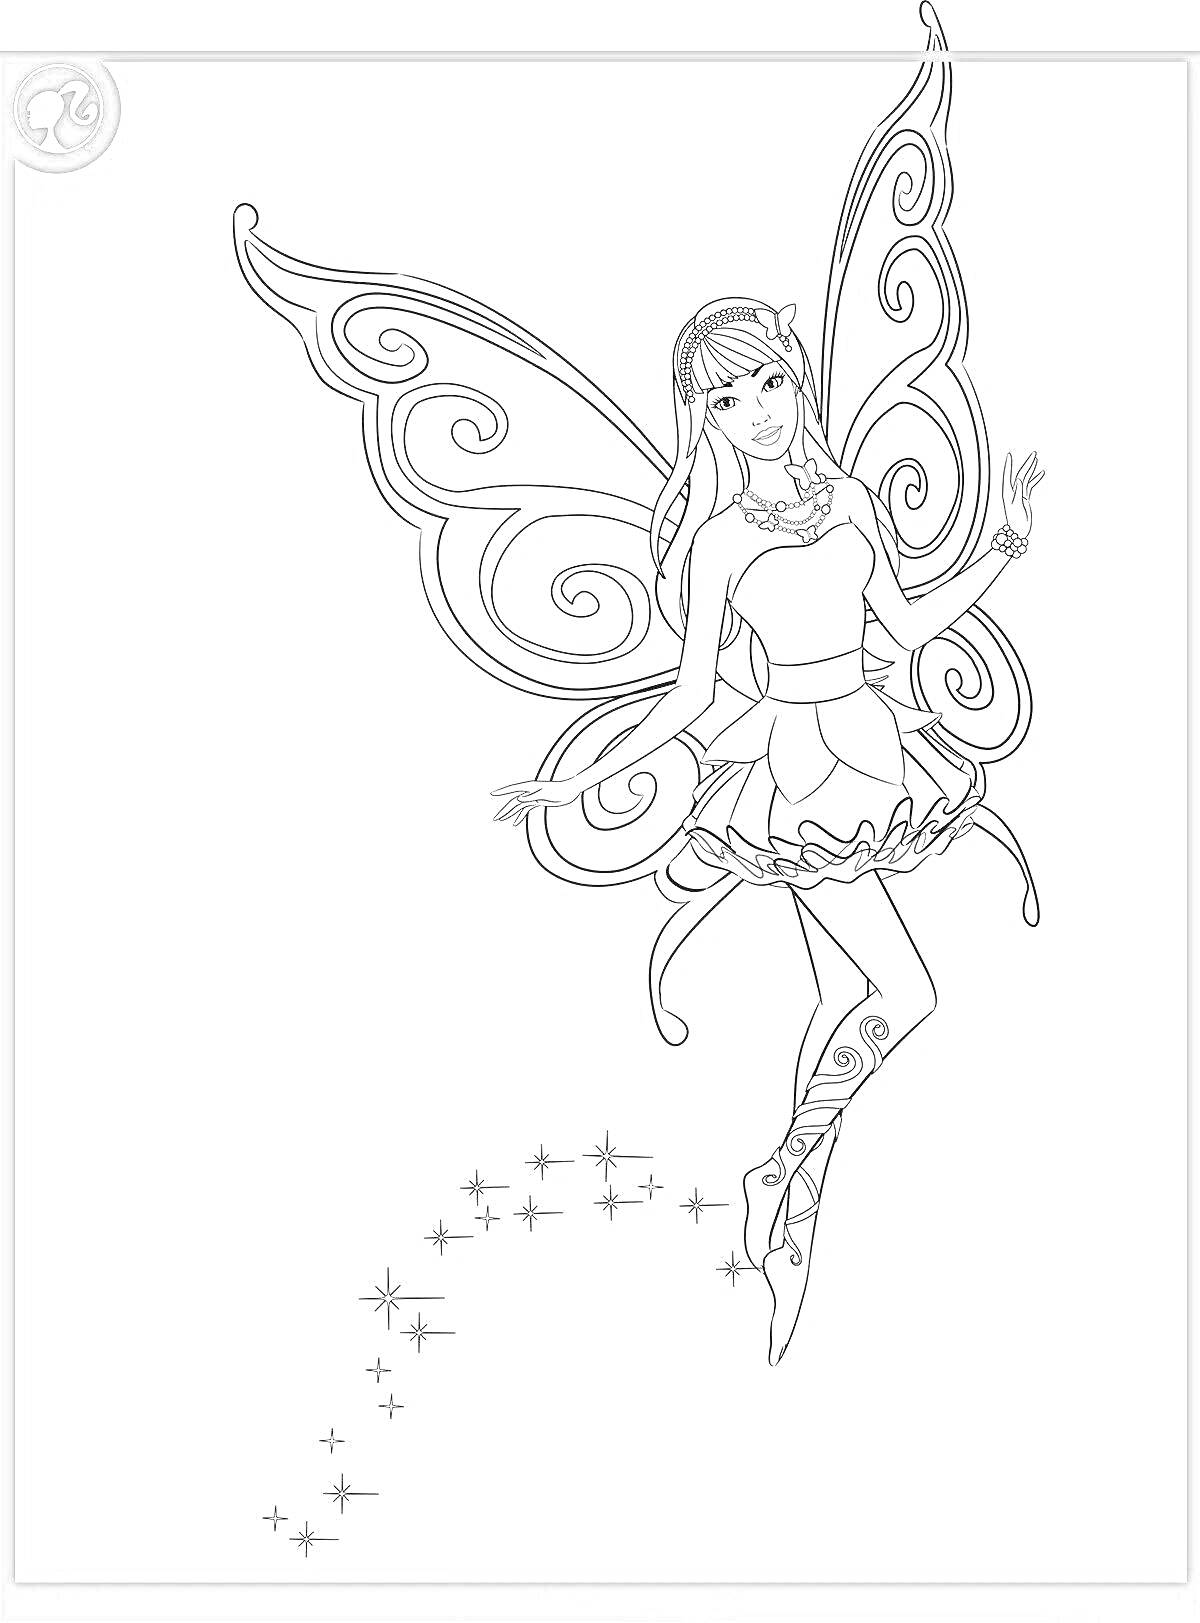 Раскраска Барби в волшебном платье с крыльями, окружающая звёздная пыль